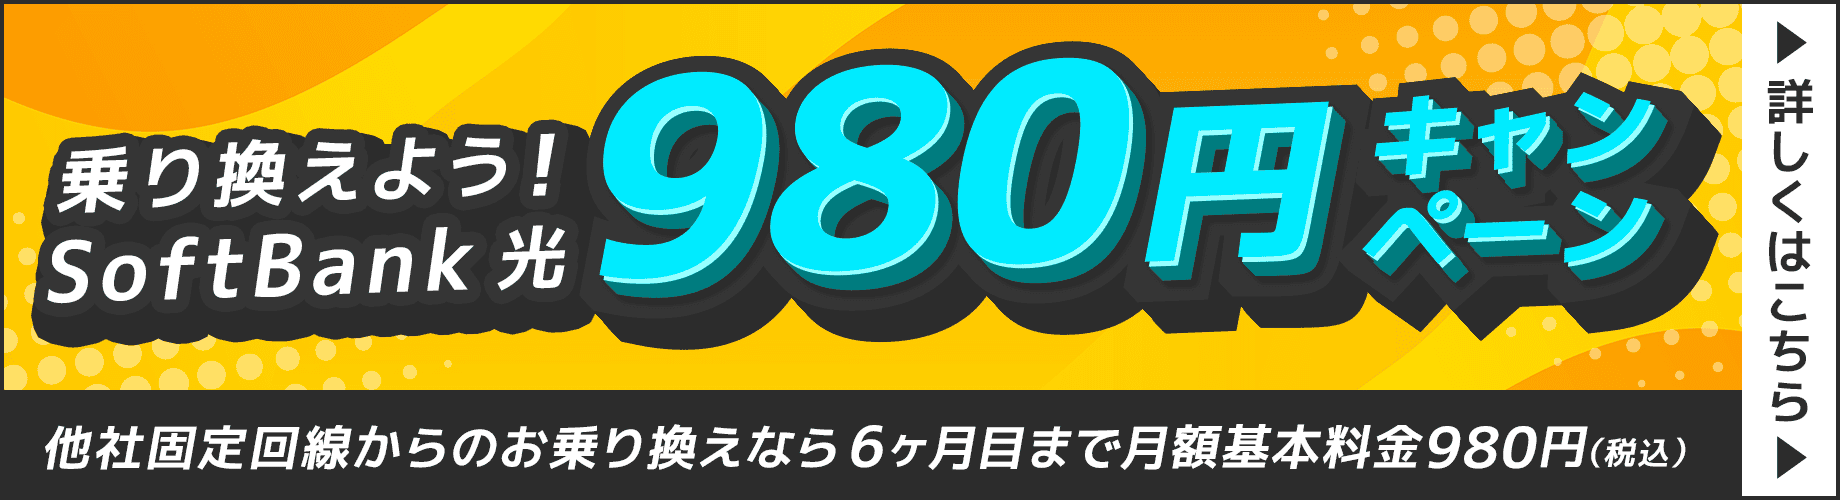 SoftBank 光 980円キャンペーン